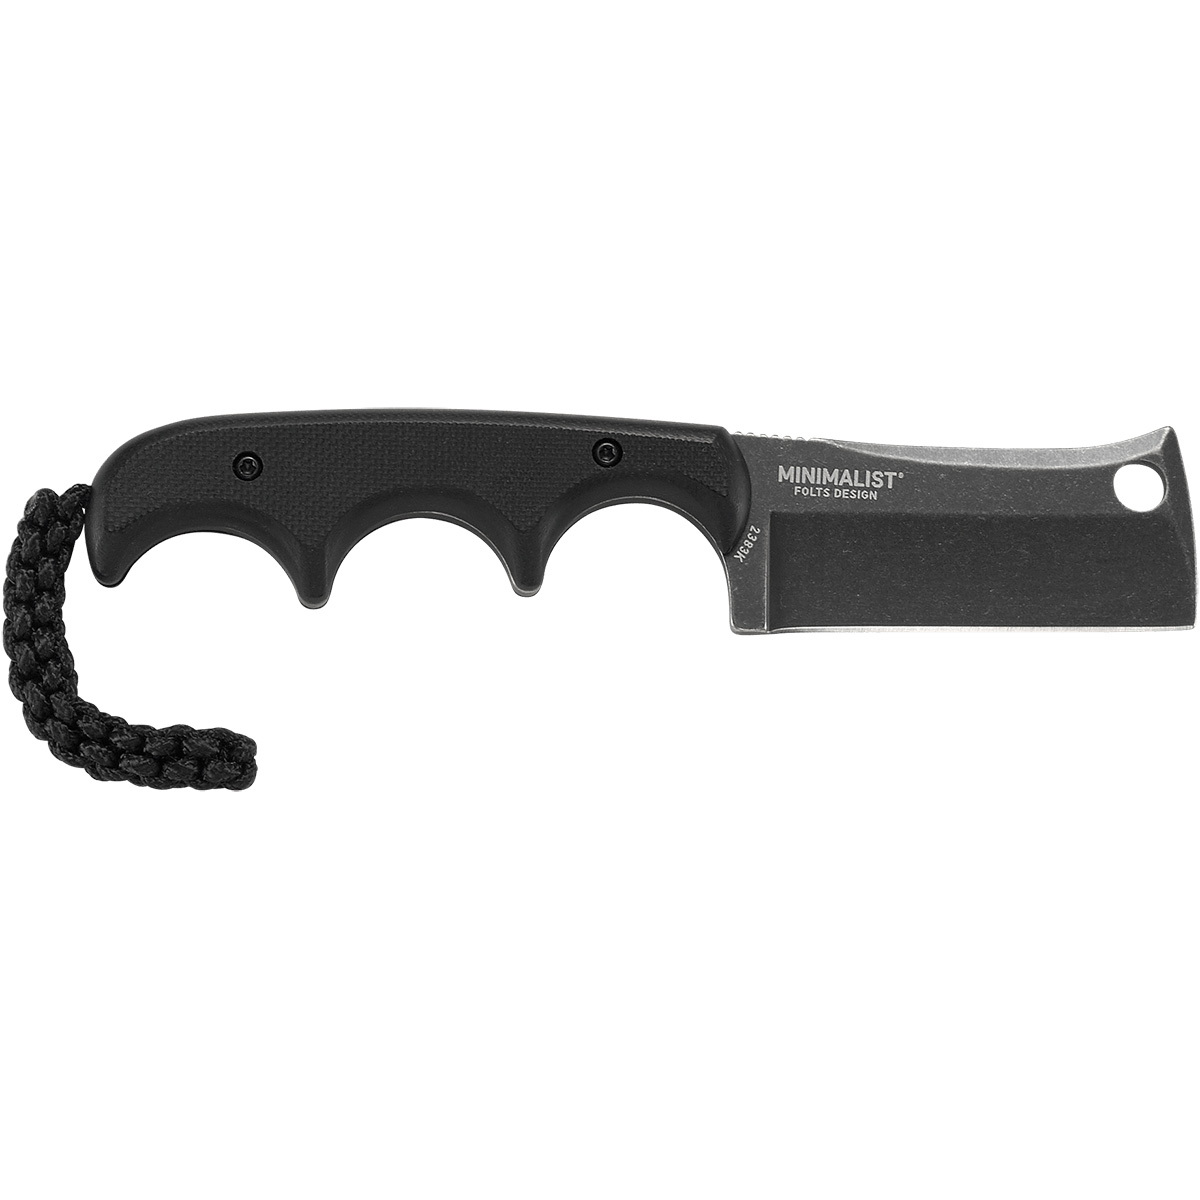 Шейный нож с фиксированным клинком CRKT Minimalist Cleaver Blackout, сталь 5Cr15MoV, рукоять G10 - фото 2